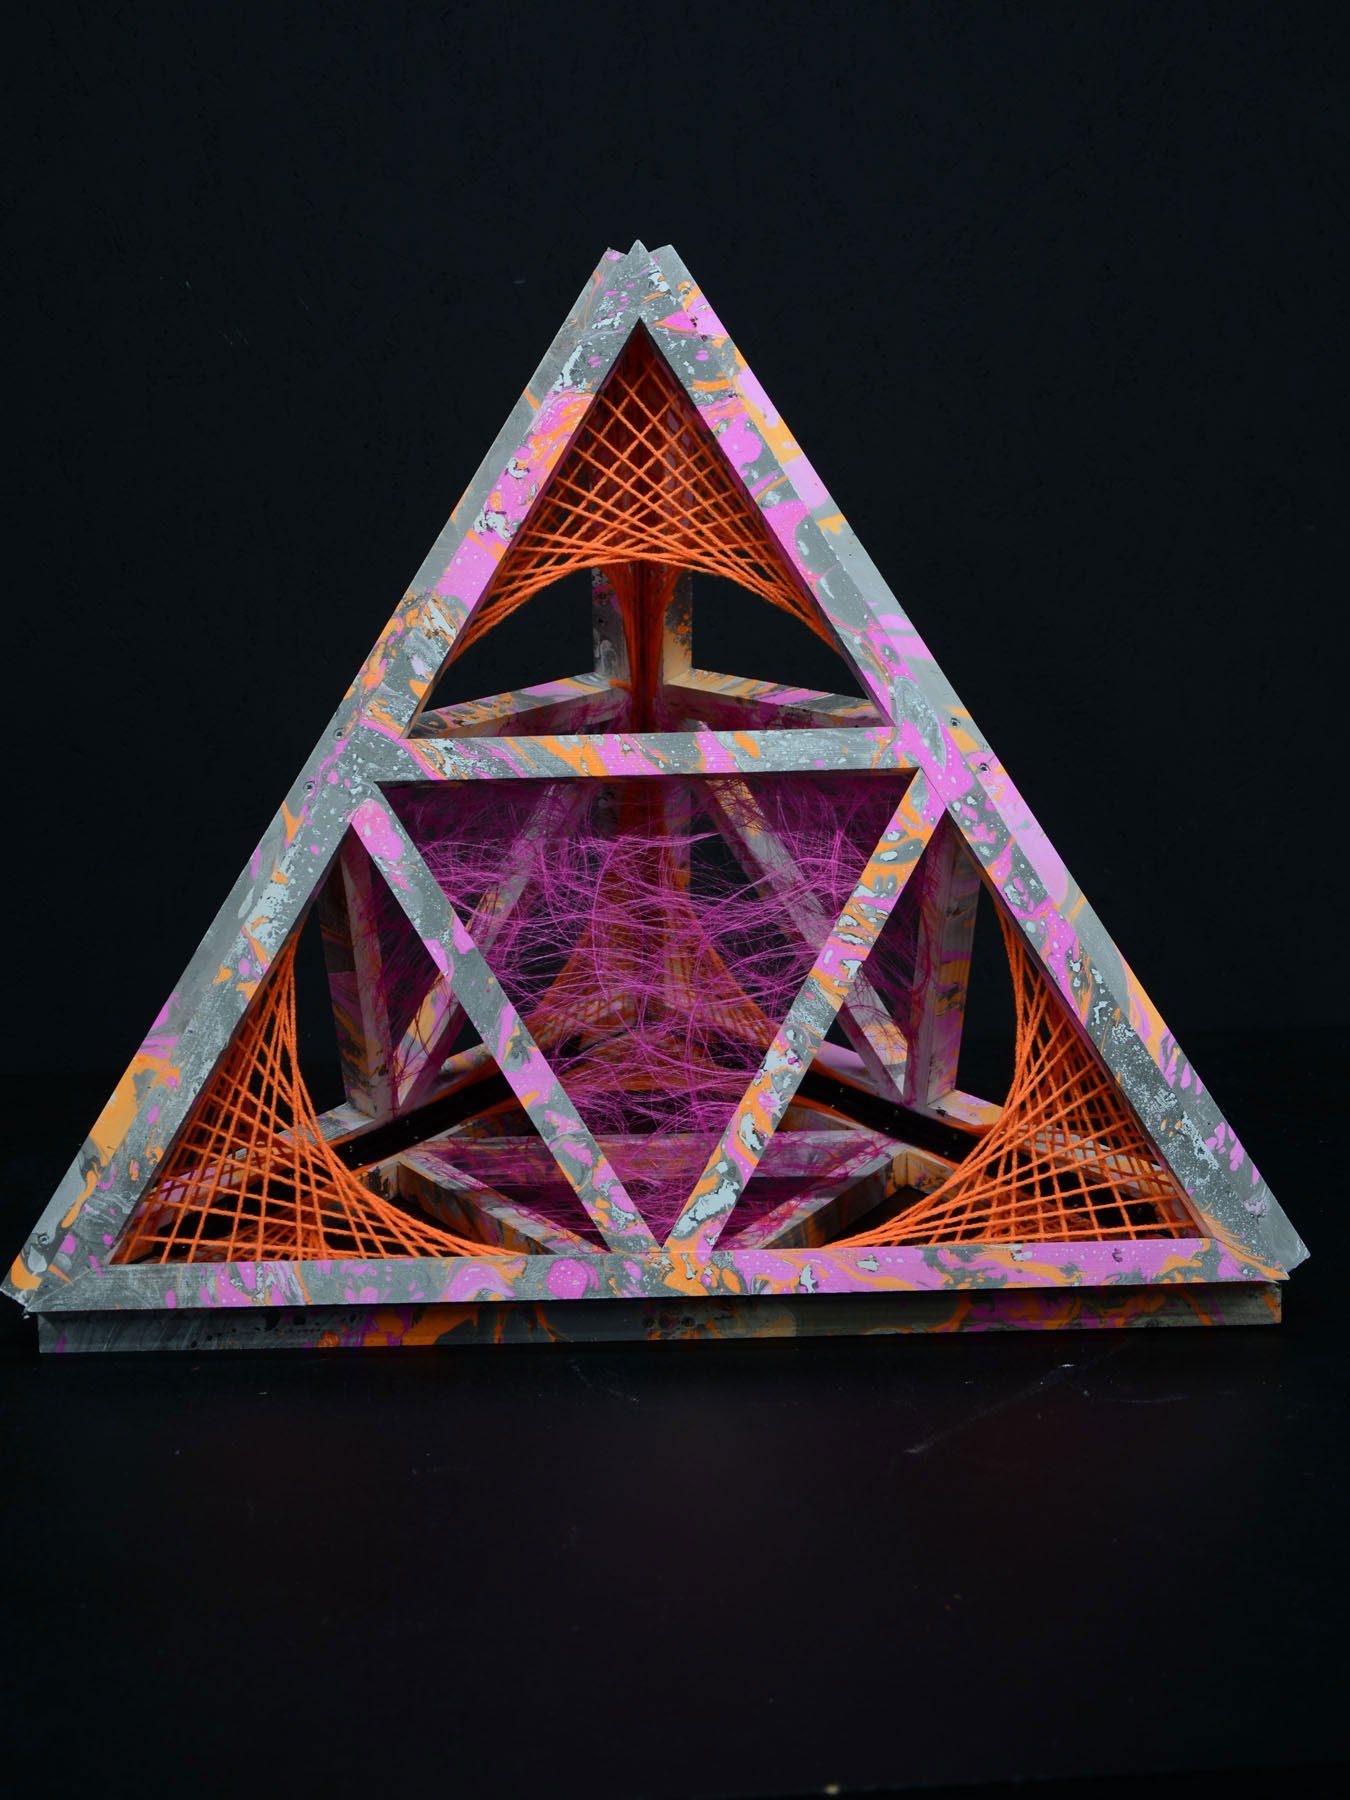 PSYWORK Dekoobjekt Schwarzlicht 3D StringArt Pyramide "Deep Orange Journey", 1,30m, UV-aktiv, leuchtet unter Schwarzlicht